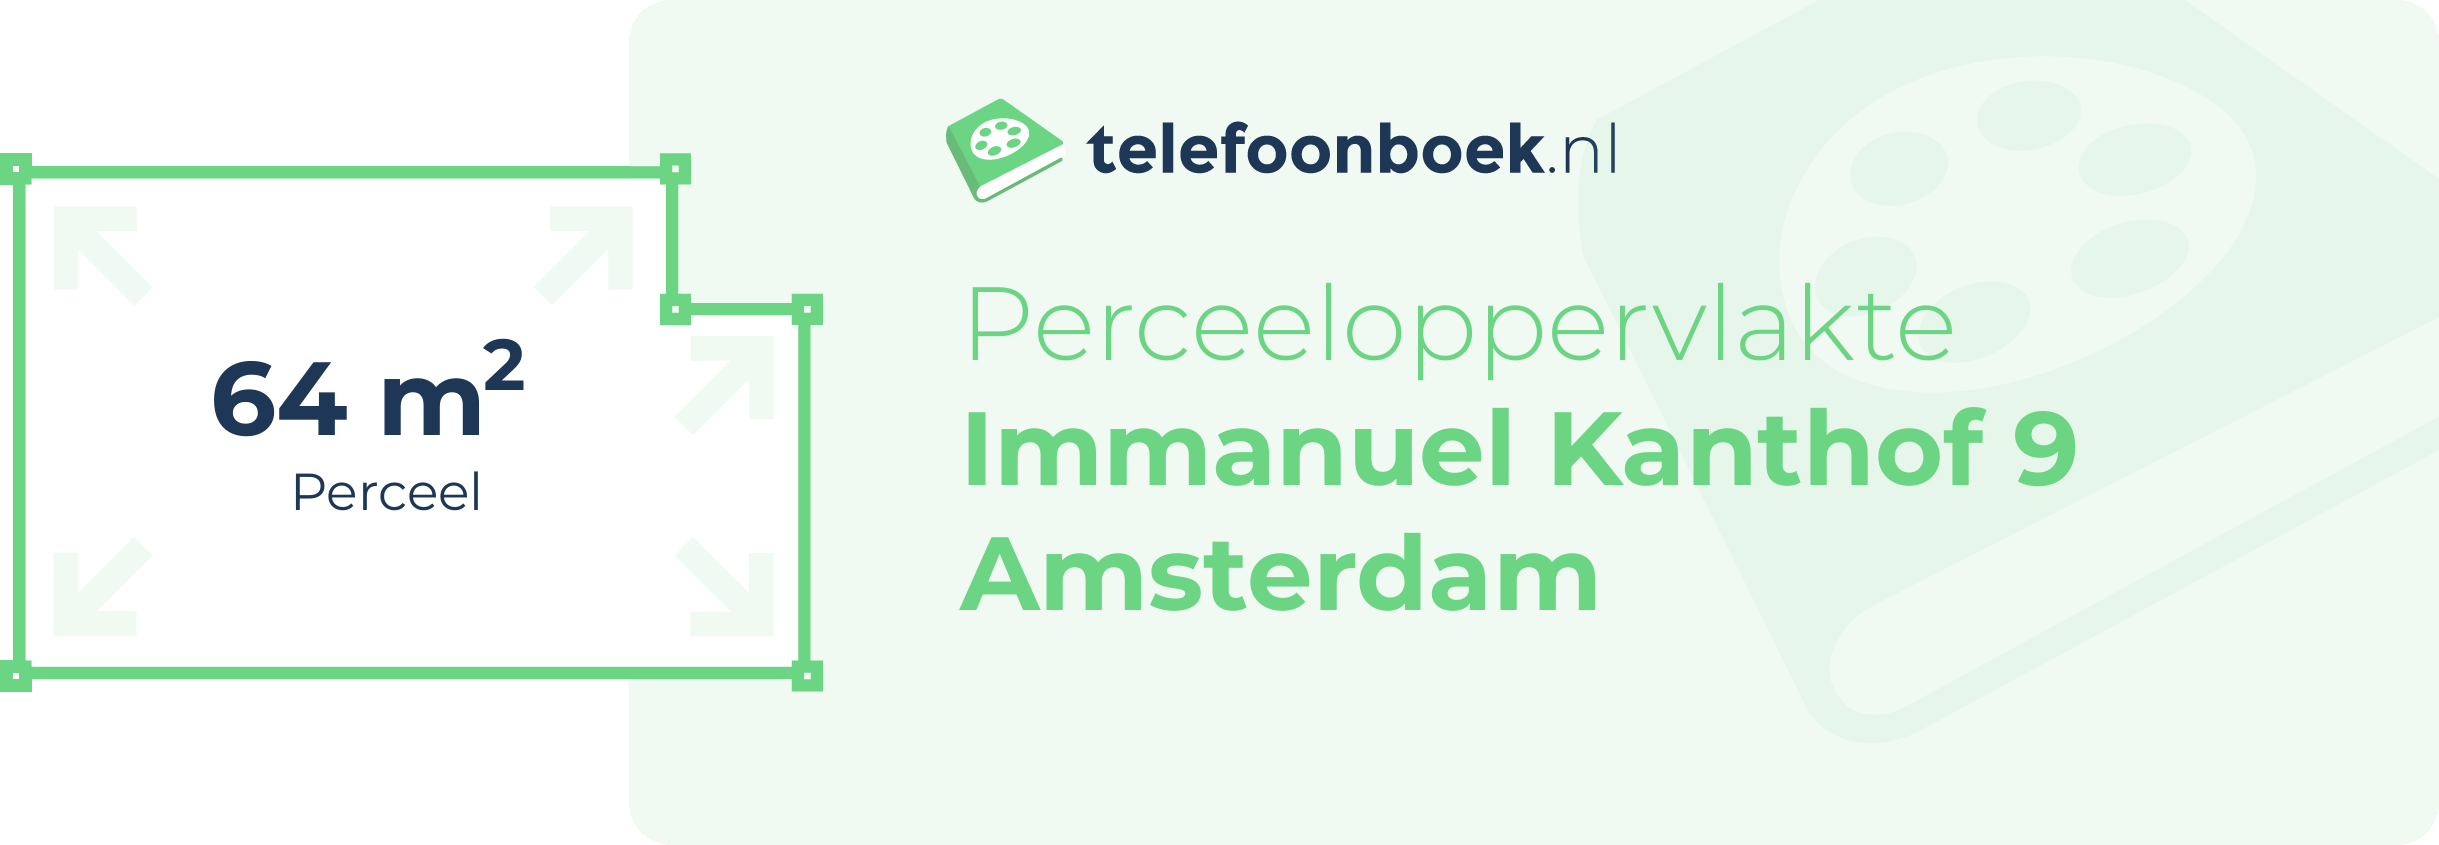 Perceeloppervlakte Immanuel Kanthof 9 Amsterdam